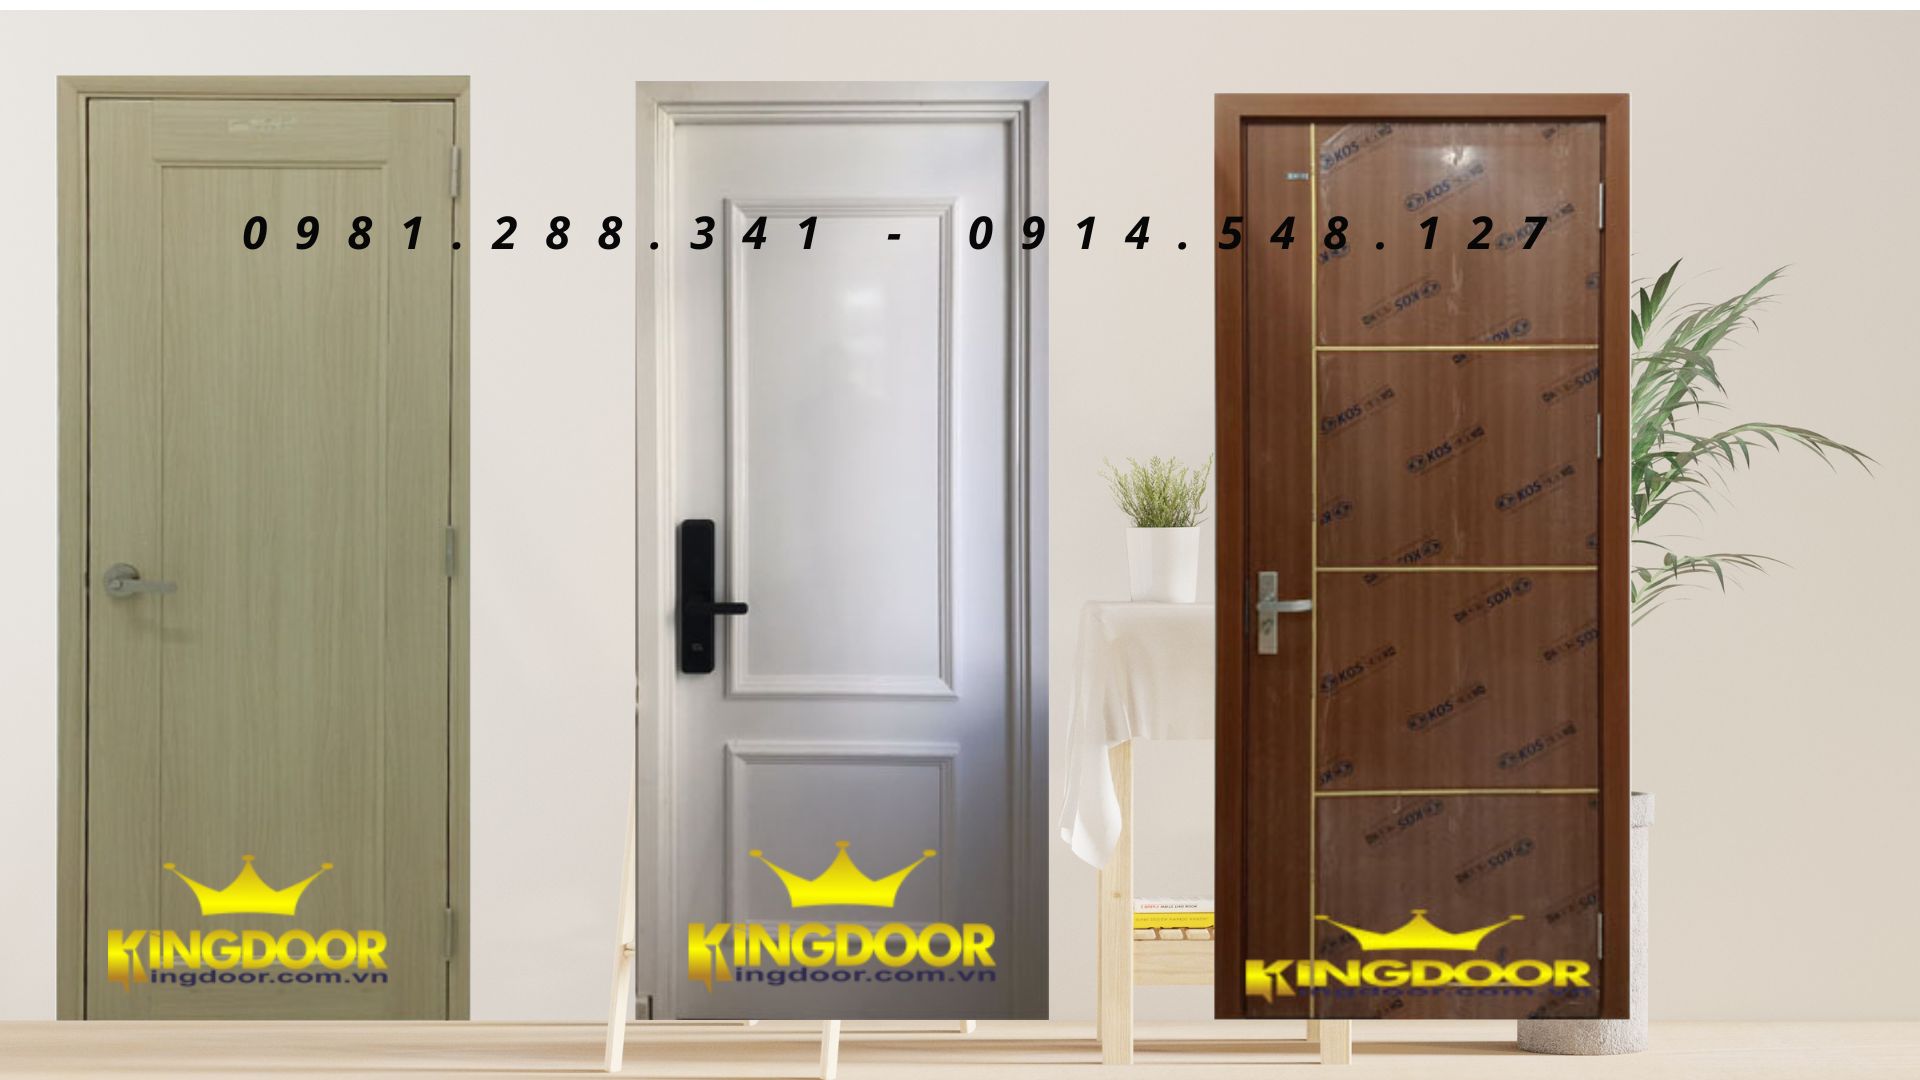 Nội, ngoại thất: Giá cửa nhựa giả gỗ mới nhất tại Kingdoor 3-nhua